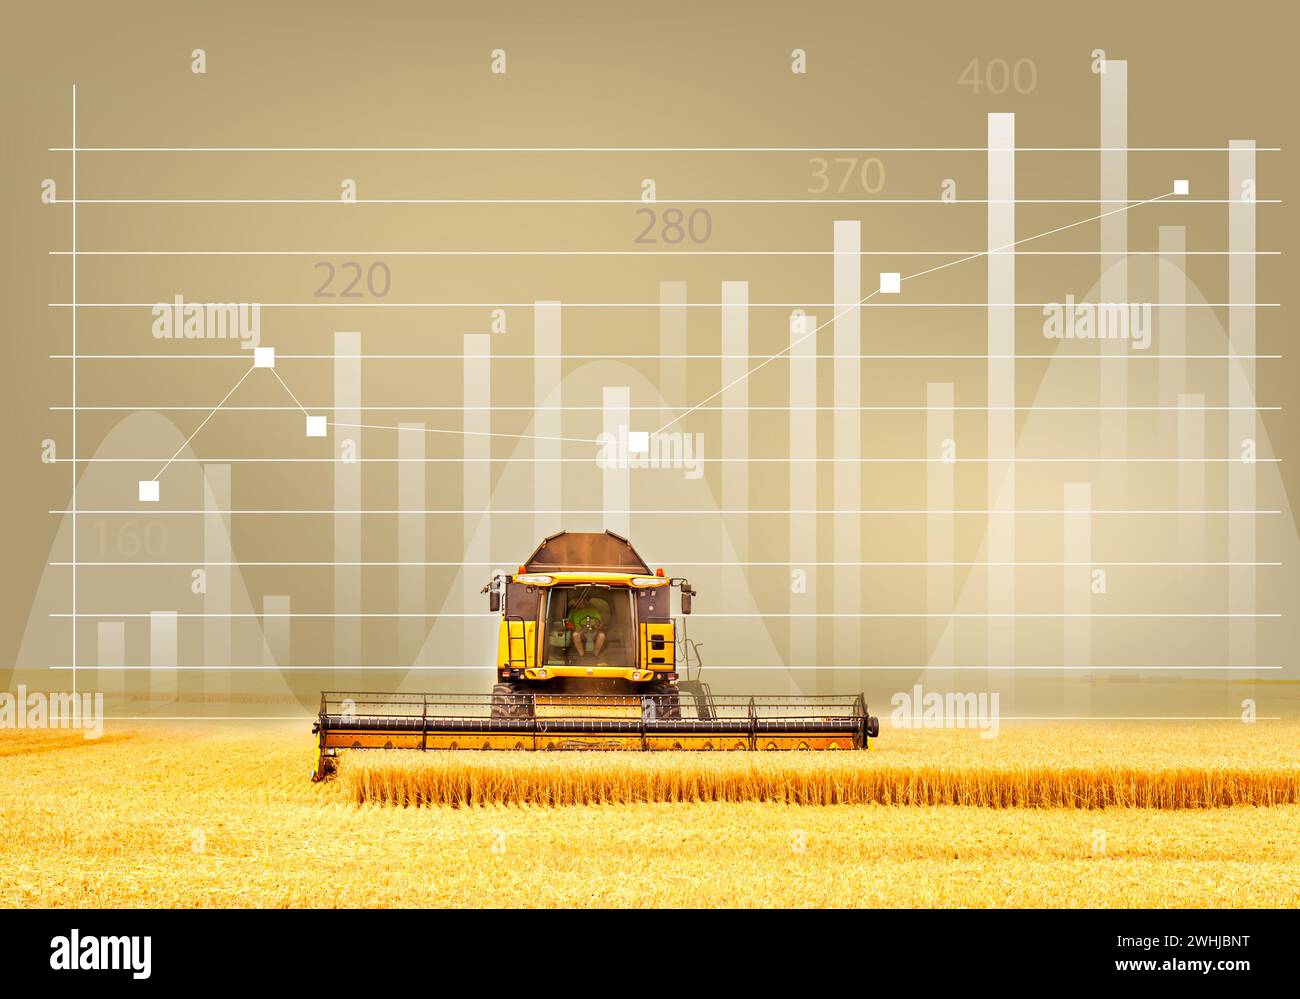 Globale Getreide- und Weizenkrise. Analysedaten und Wachstumsdiagramme. Kerzenständer für Unternehmen. Stockfoto